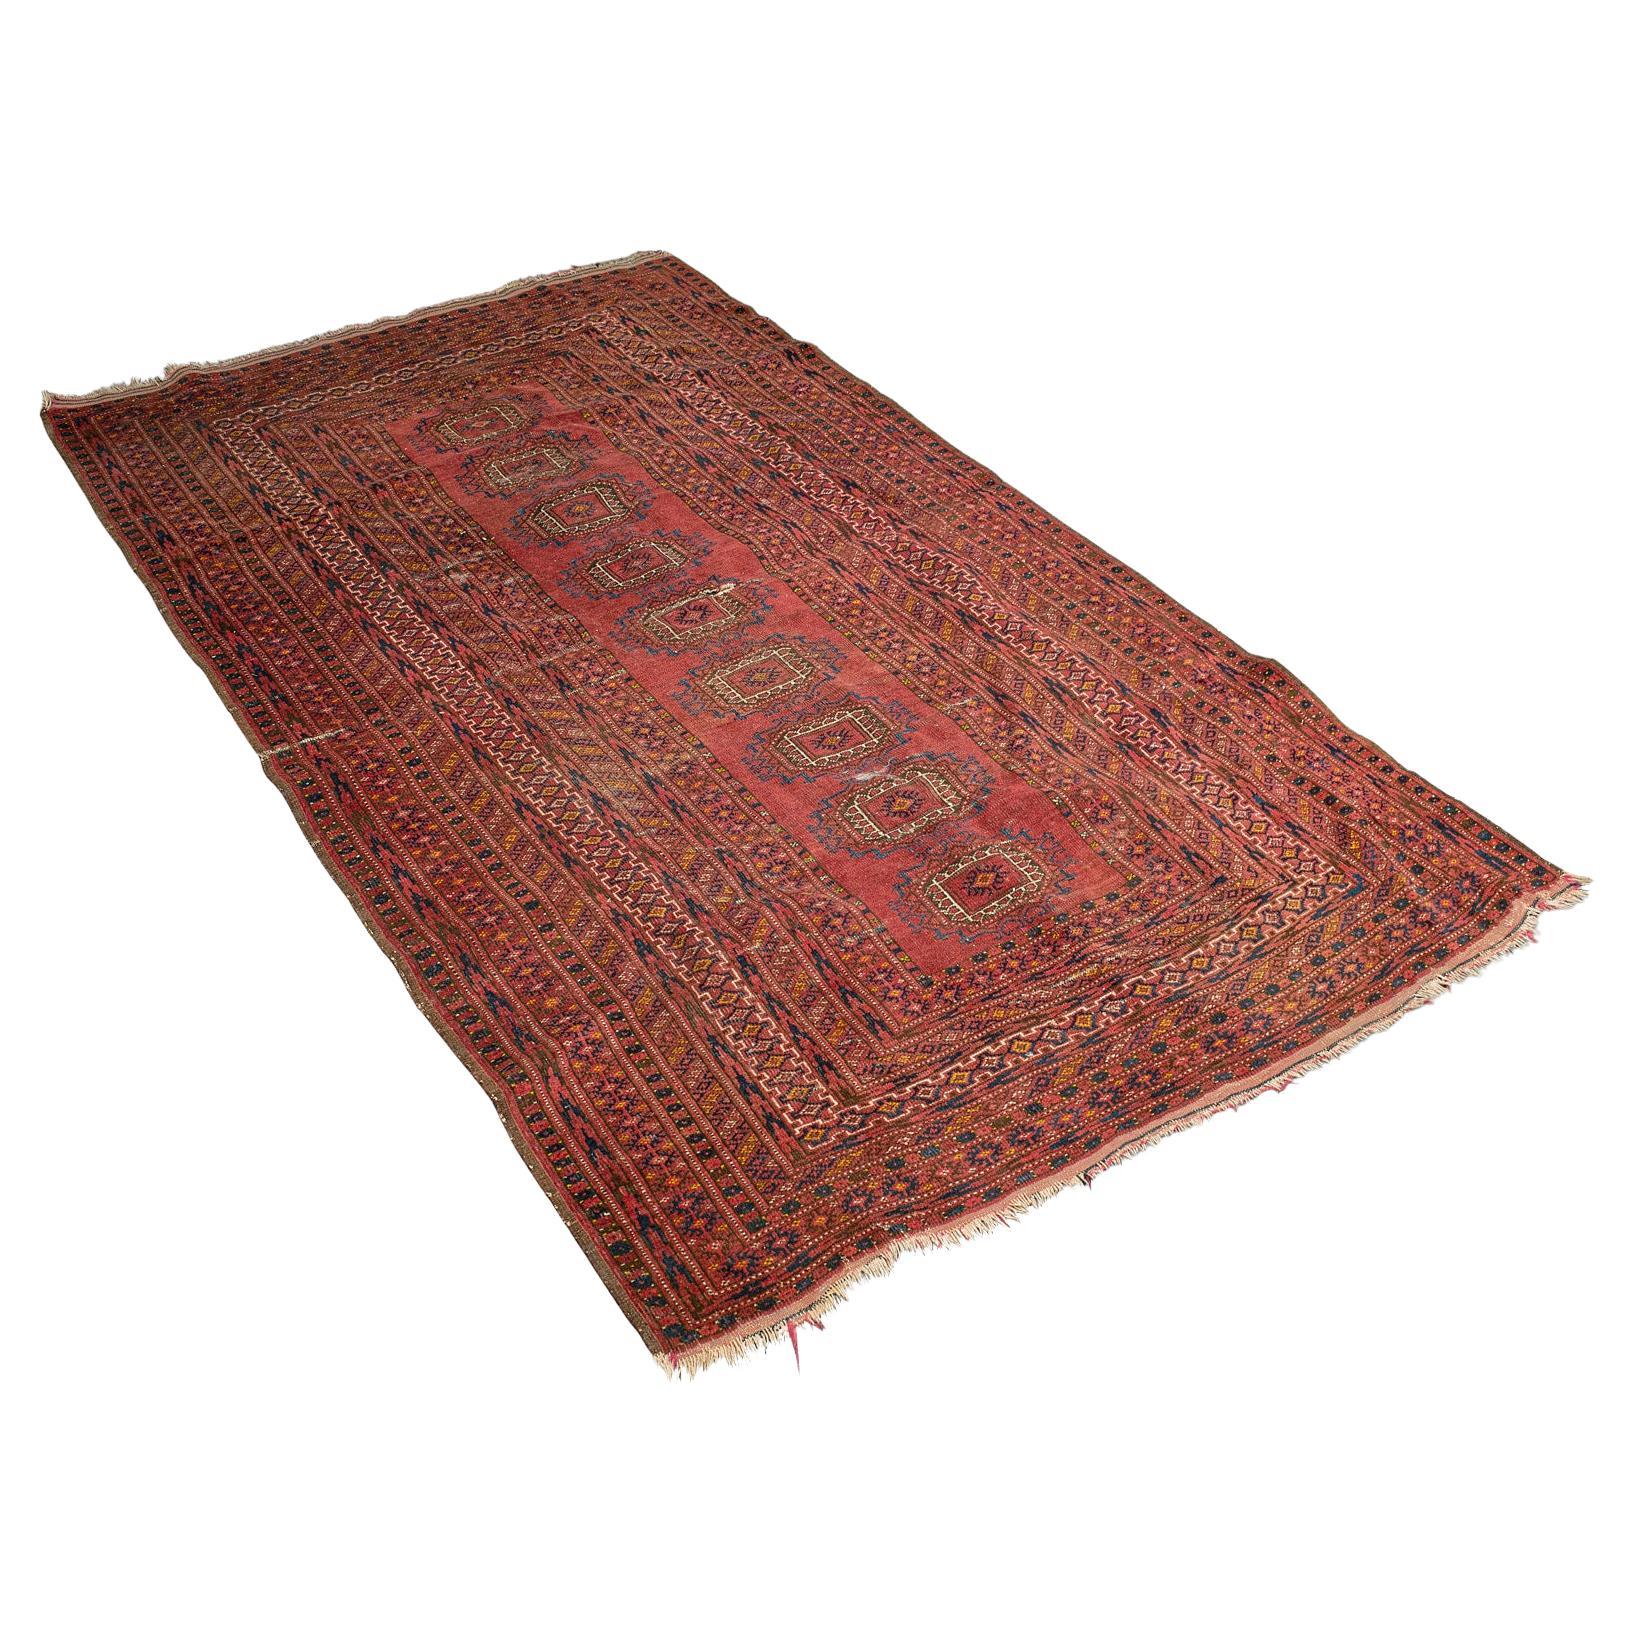 Antique Turkoman Rug, Middle Eastern, Woven Dozar, Decorative Carpet, Circa 1920